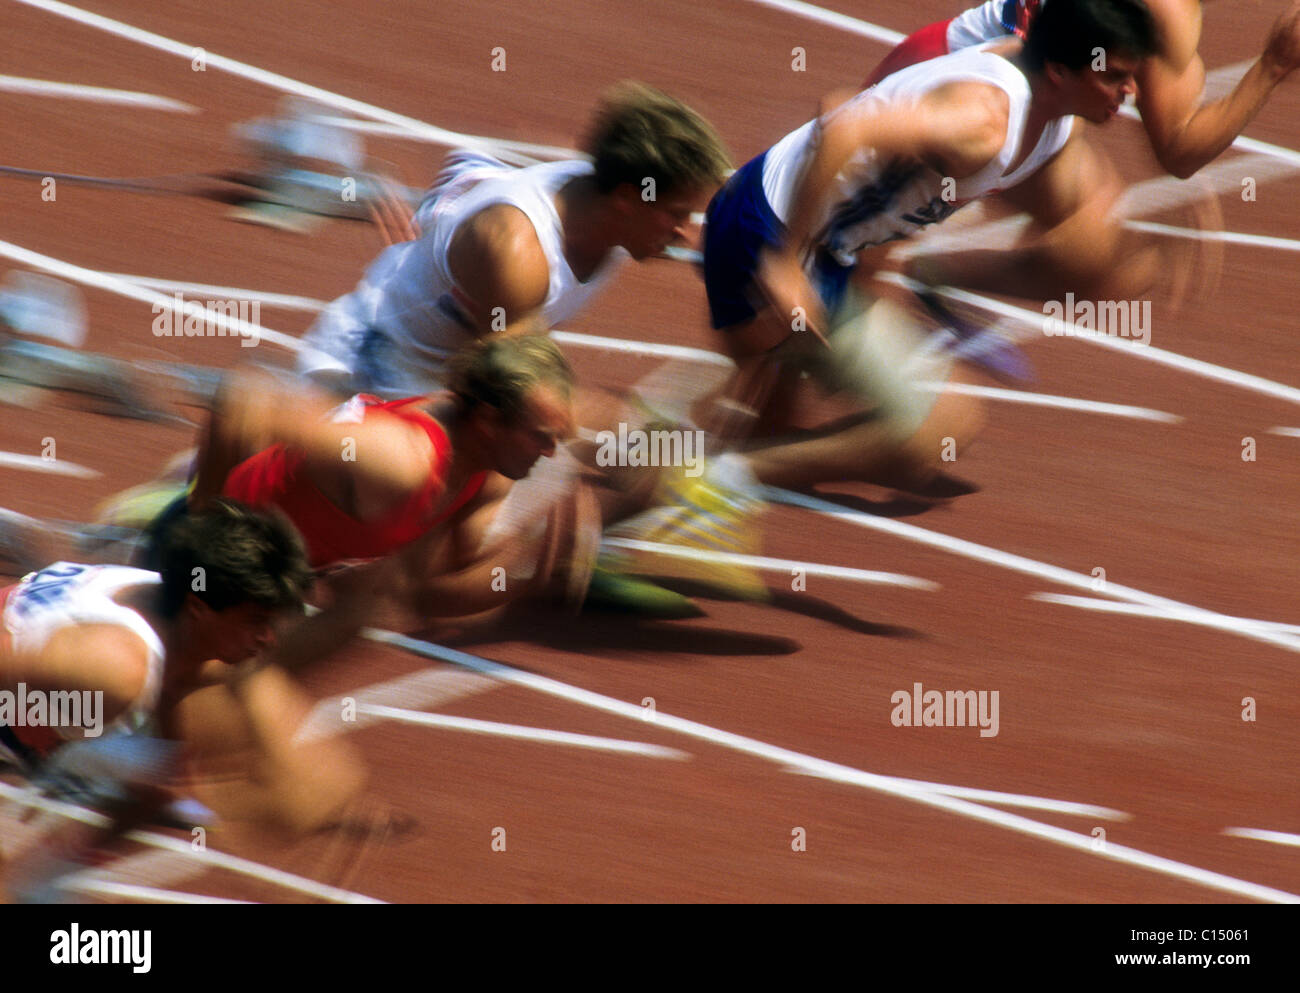 Blurred action of men's 100 meter sprint race. Stock Photo